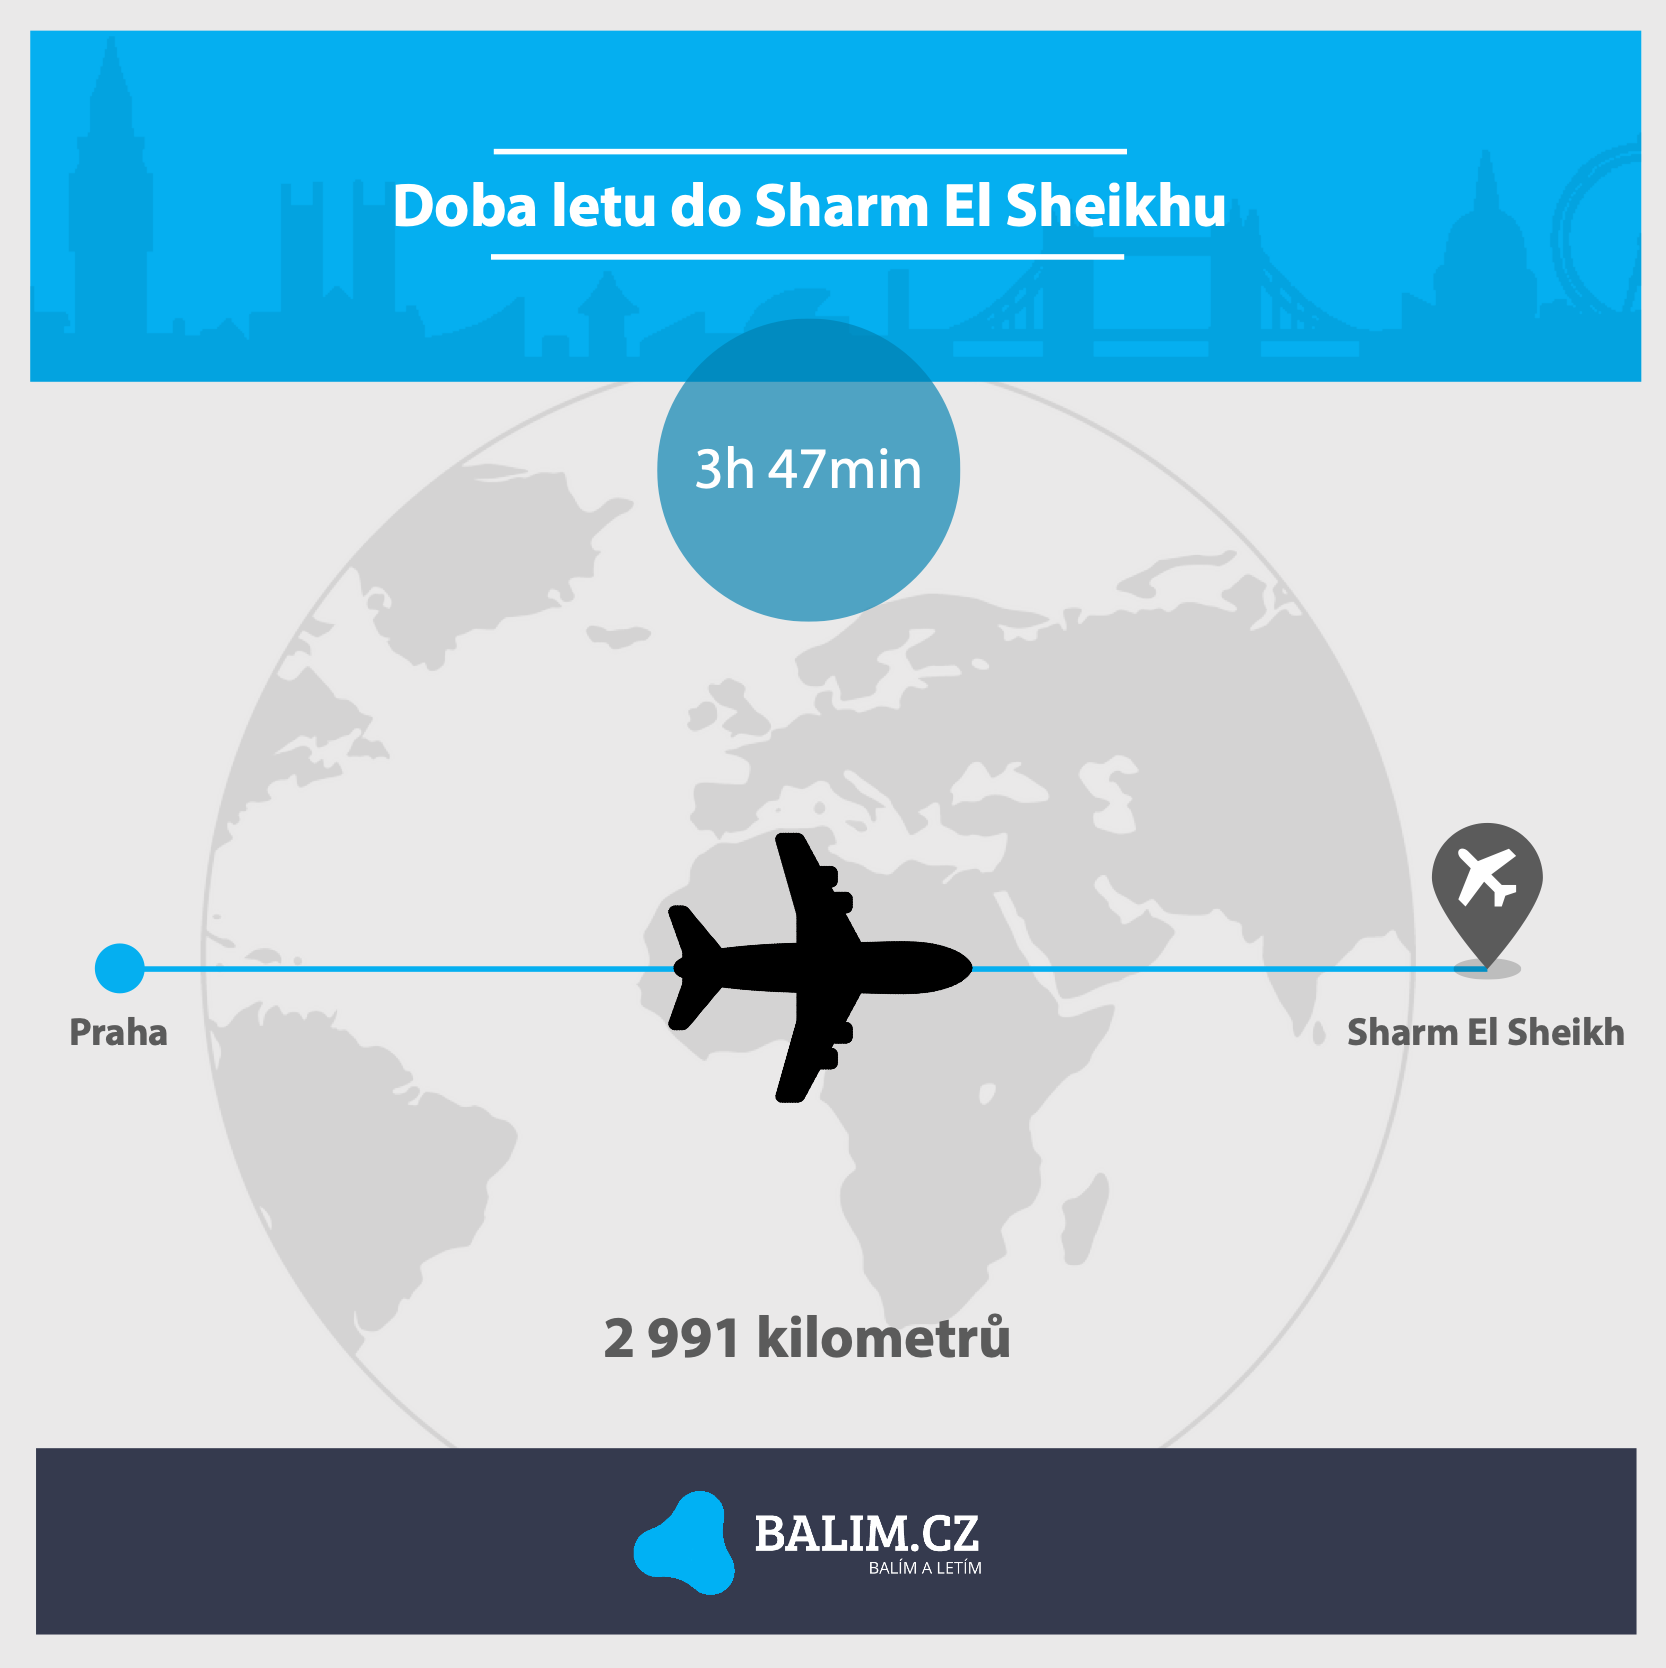 Doba letu do Sharm El Sheikhu